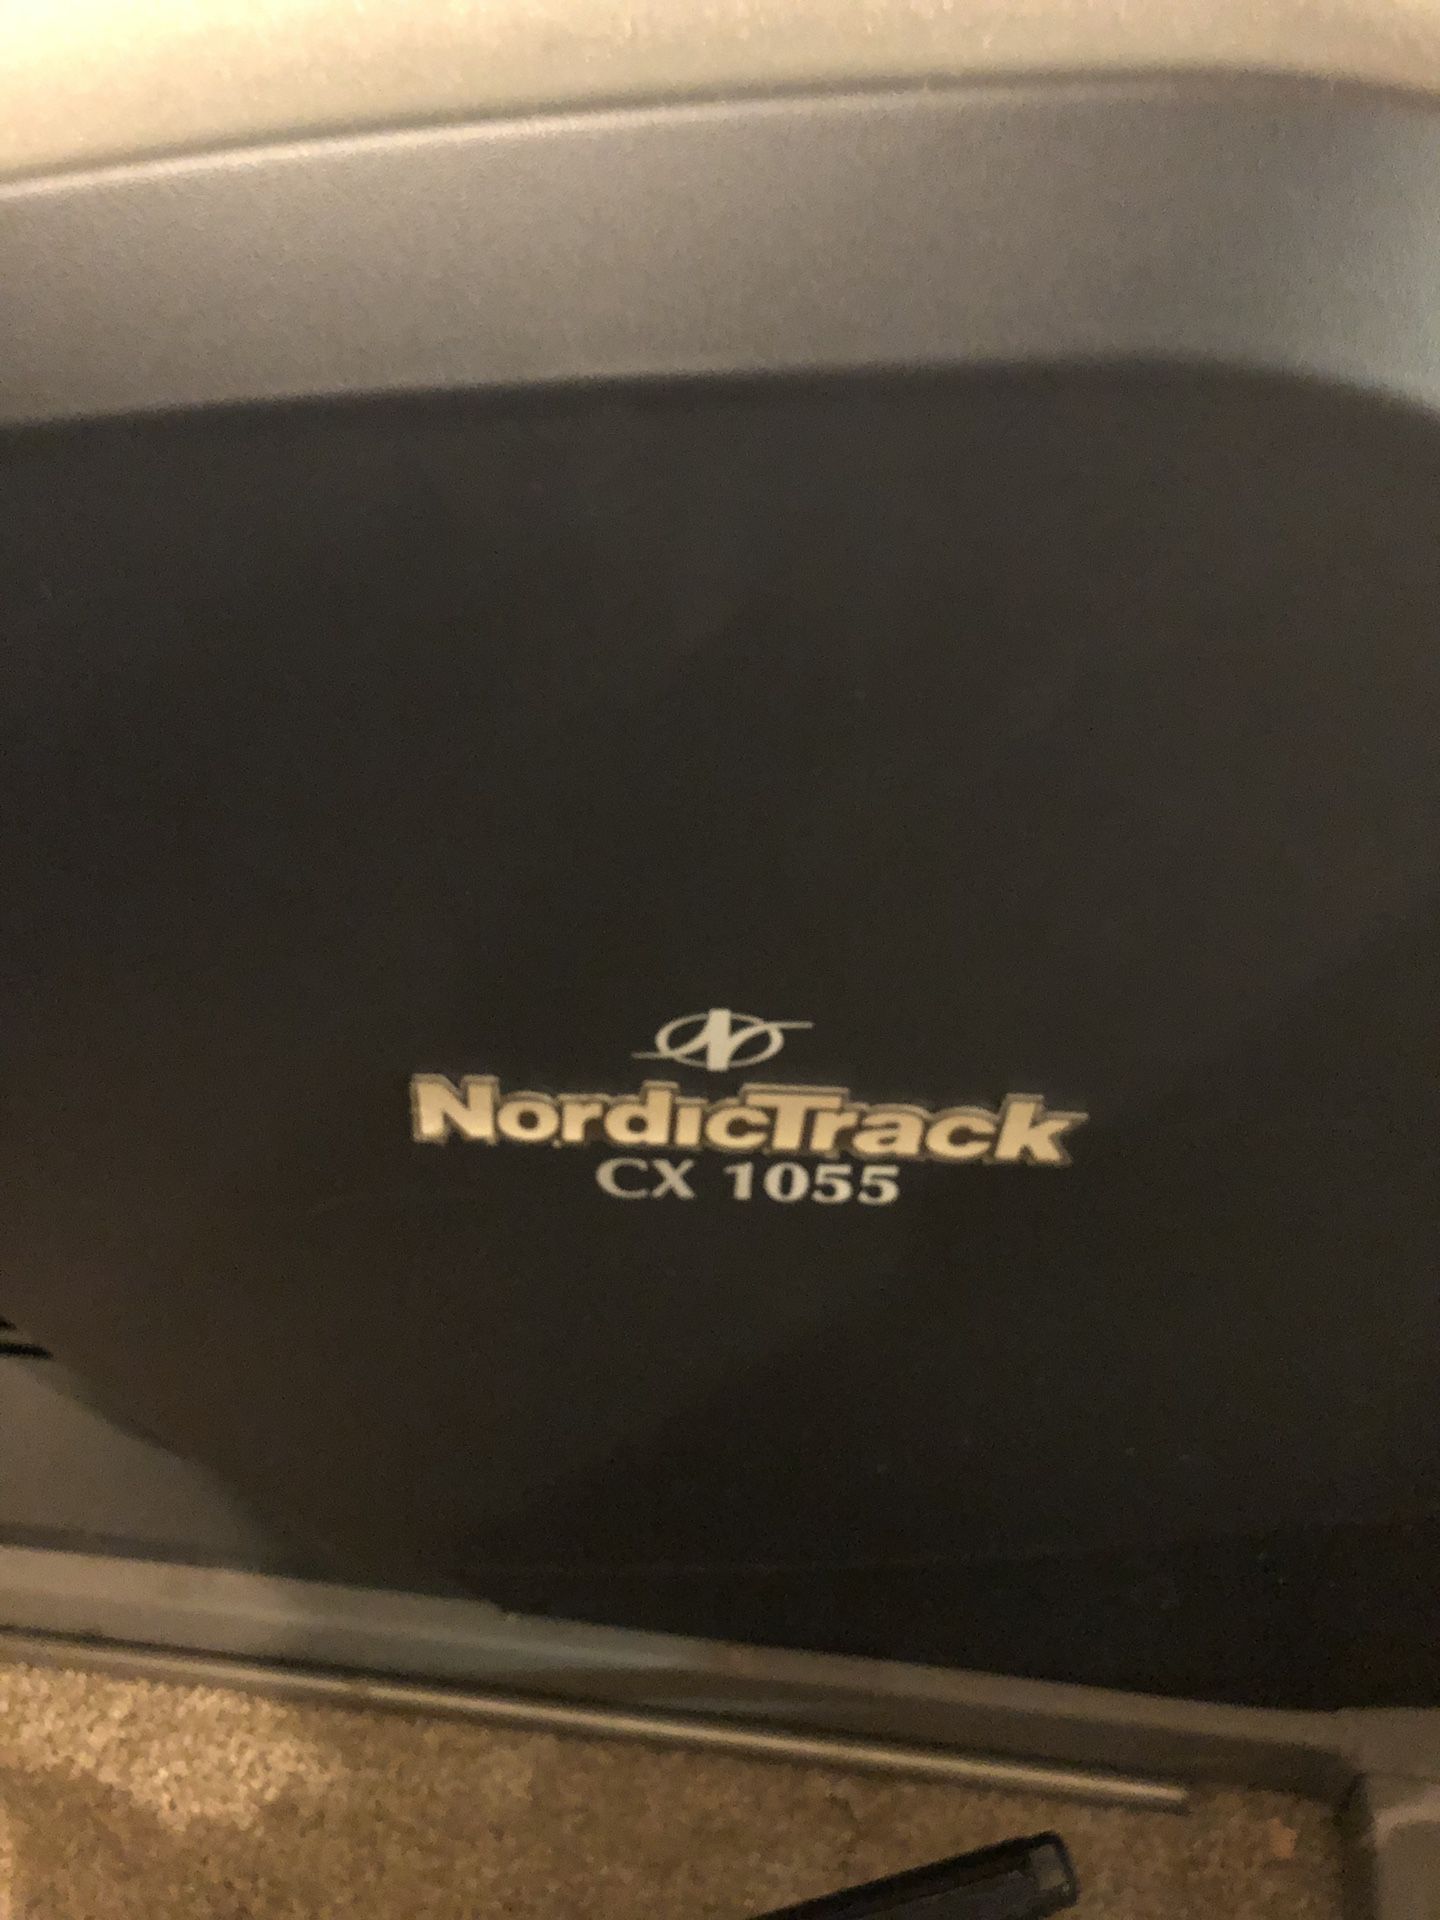 NordicTrack Elliptical